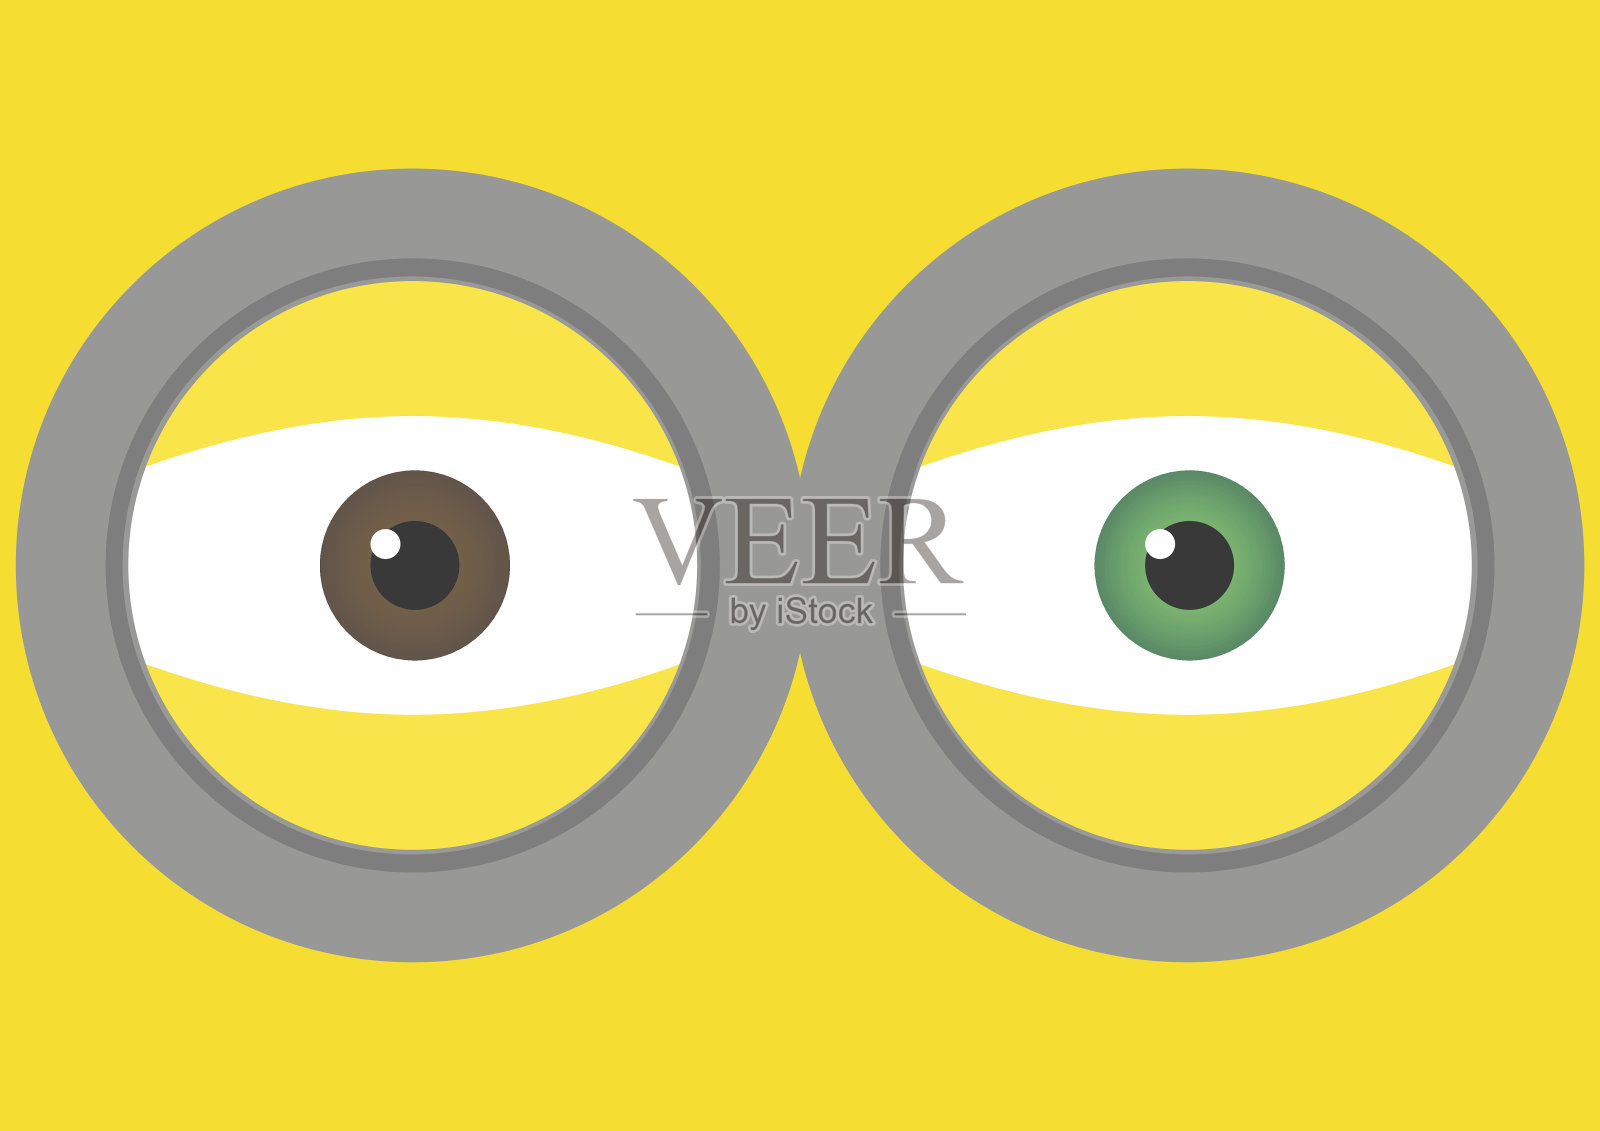 黄色背景上有两只眼睛的护目镜的矢量插图。矢量插图背景设计。插画图片素材